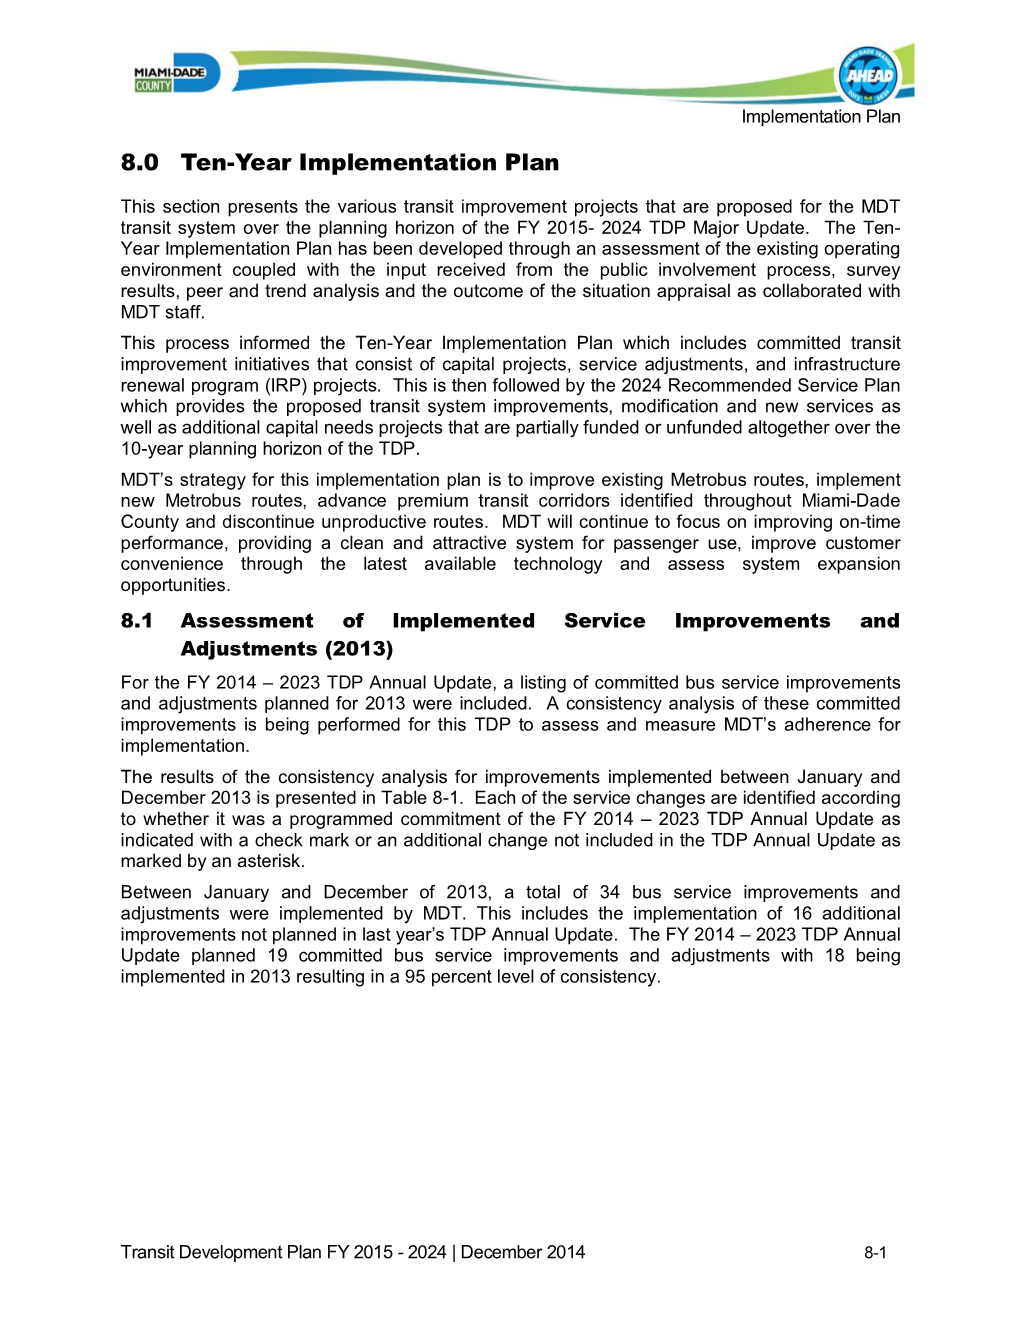 8.0 Ten-Year Implementation Plan